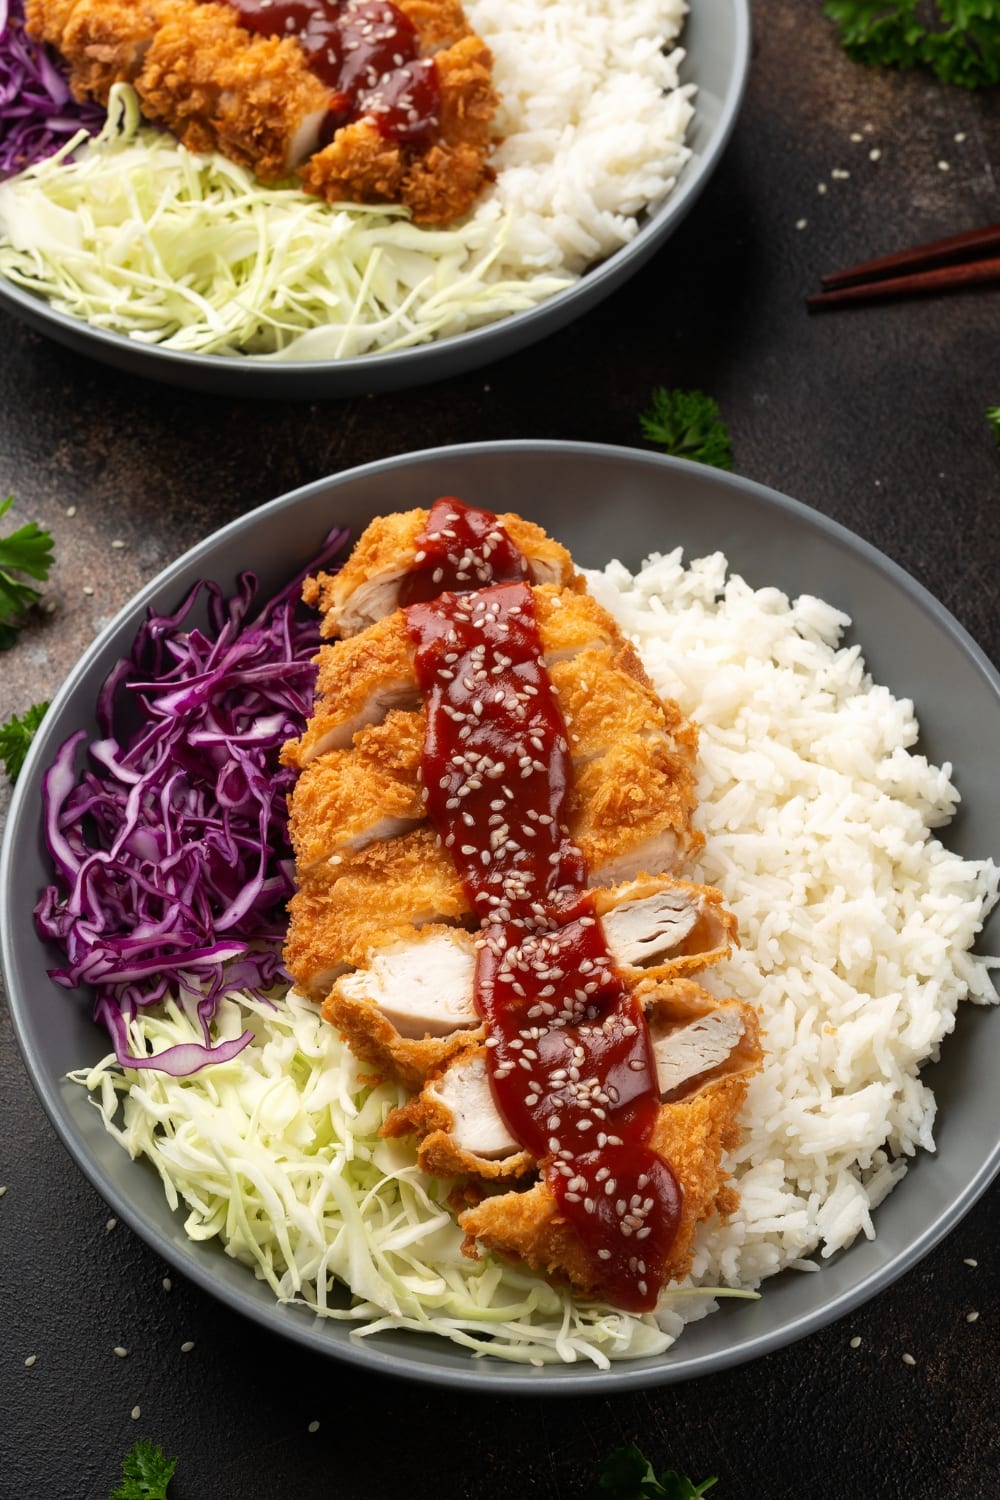 How to Make Chicken Katsu at Home